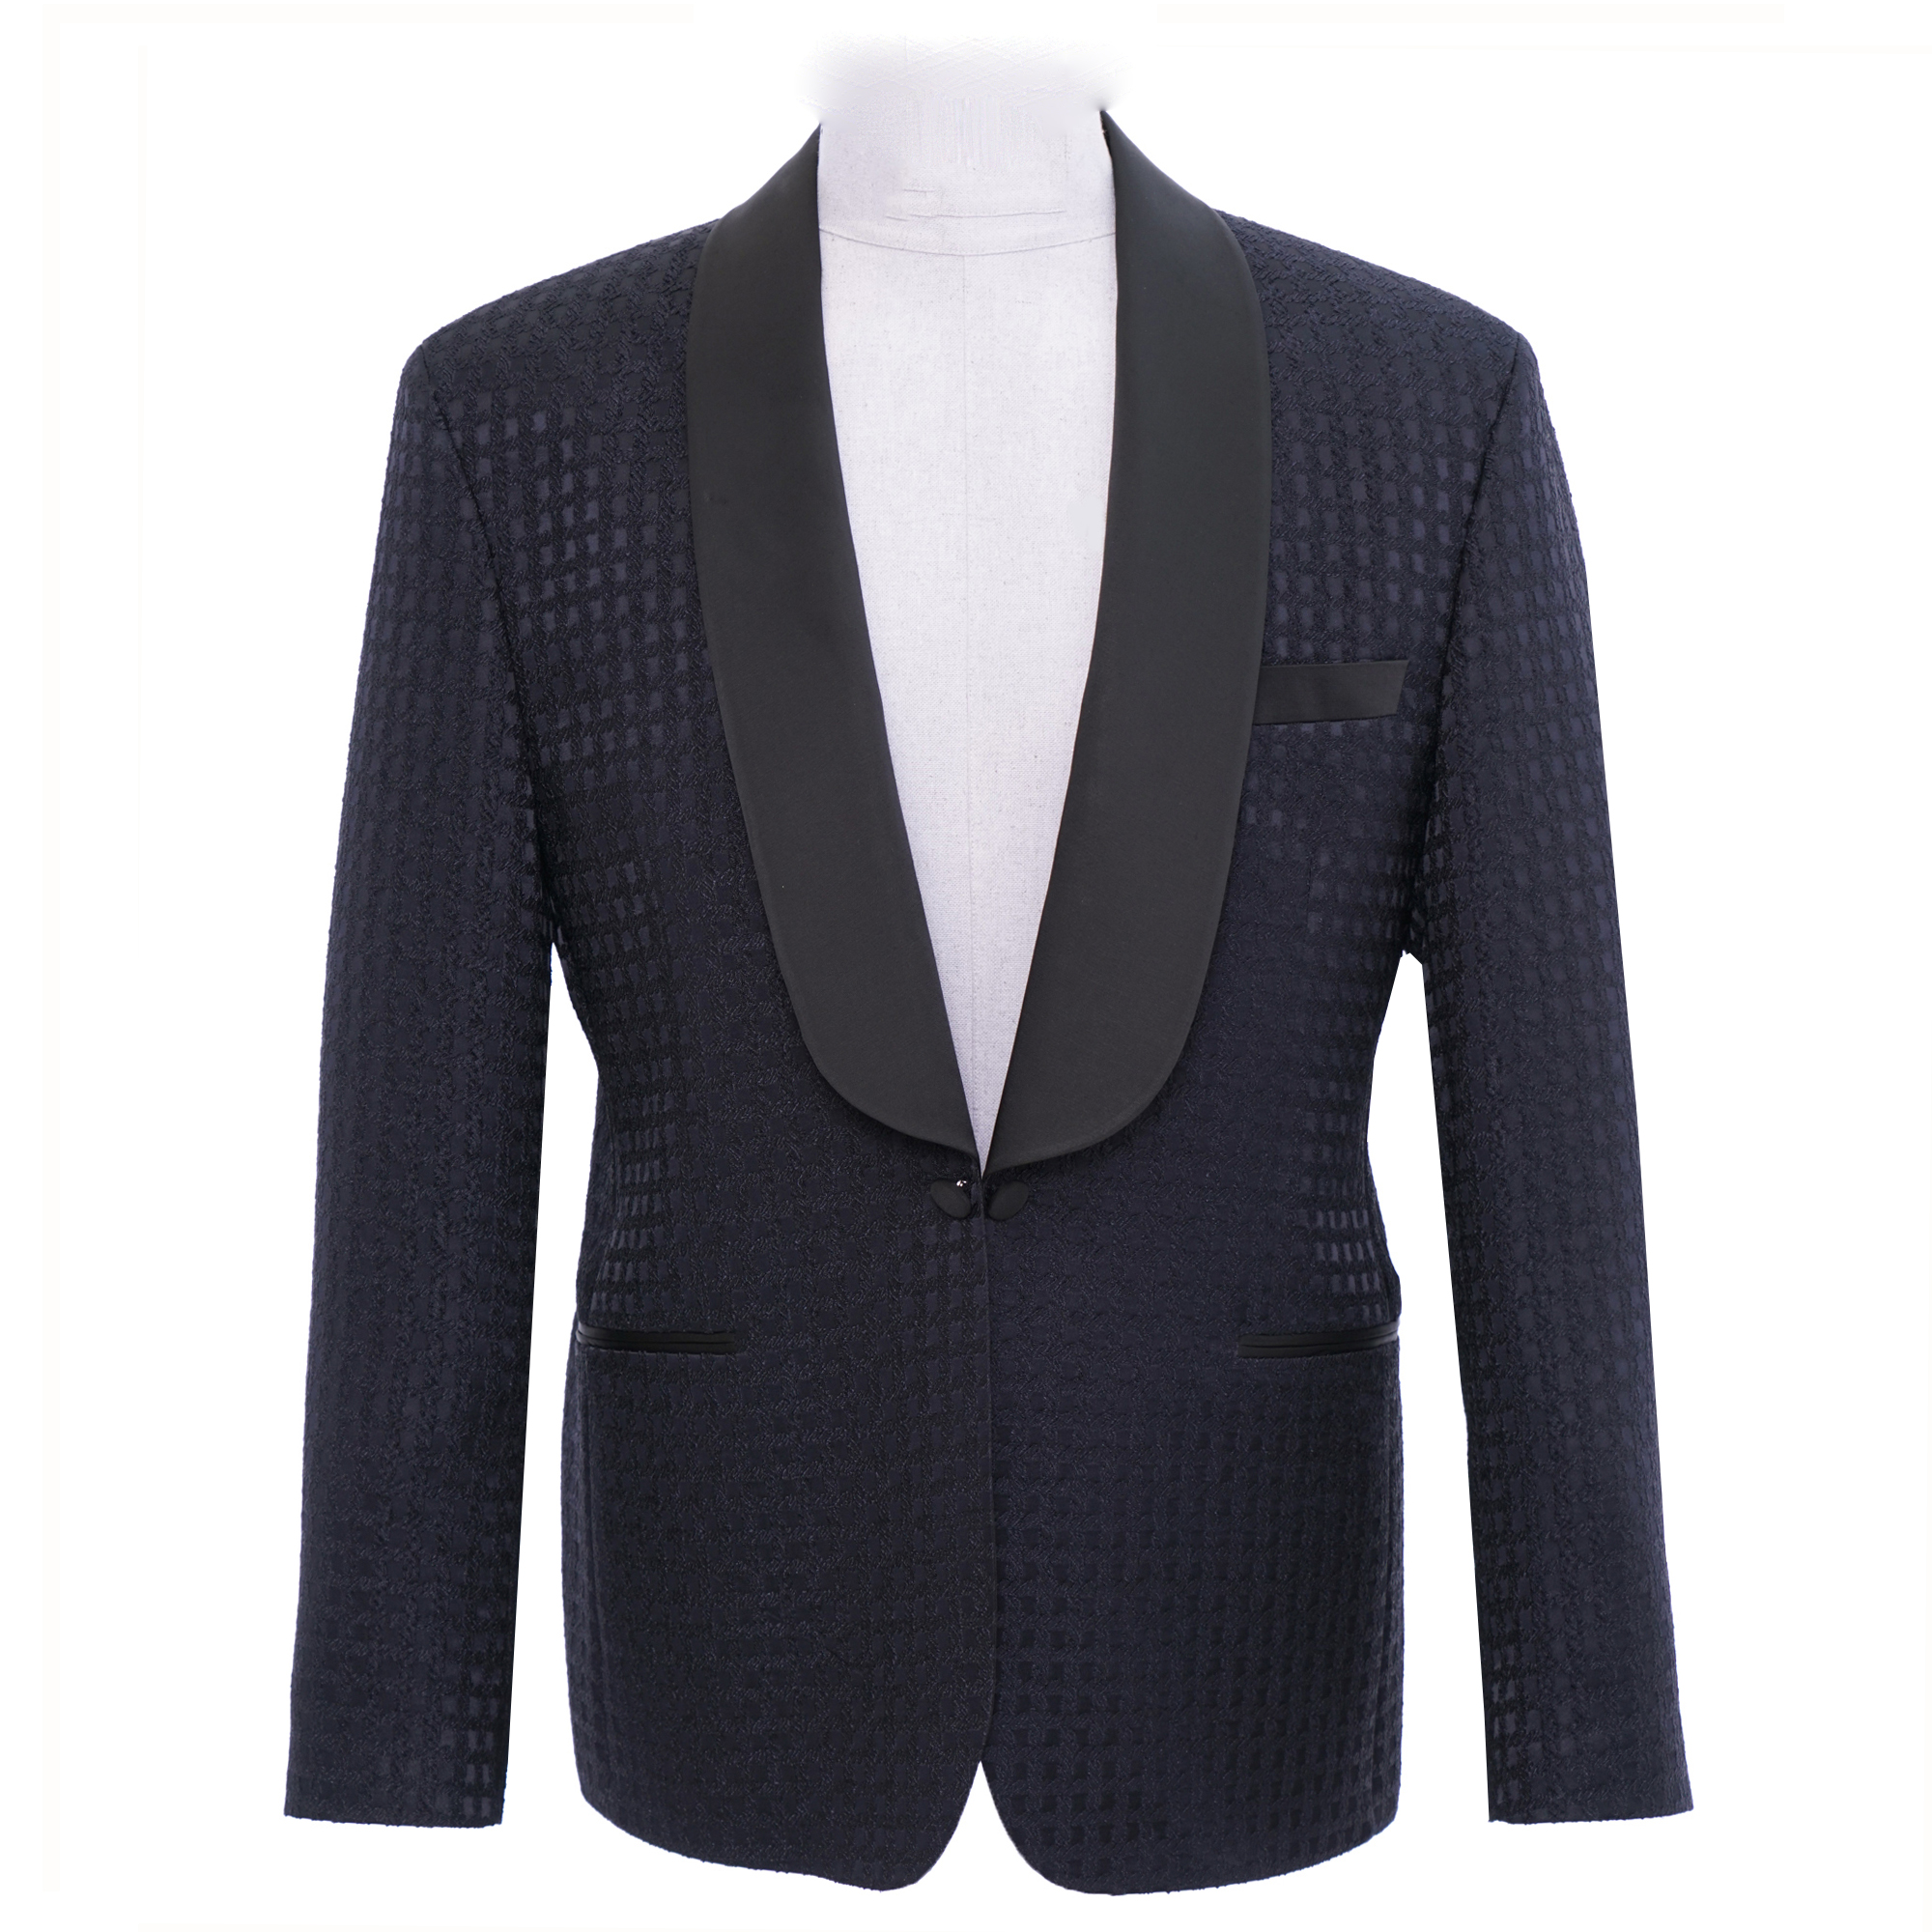 Blue Square Tuxedo Jacket - Esclot Suit Tailors London